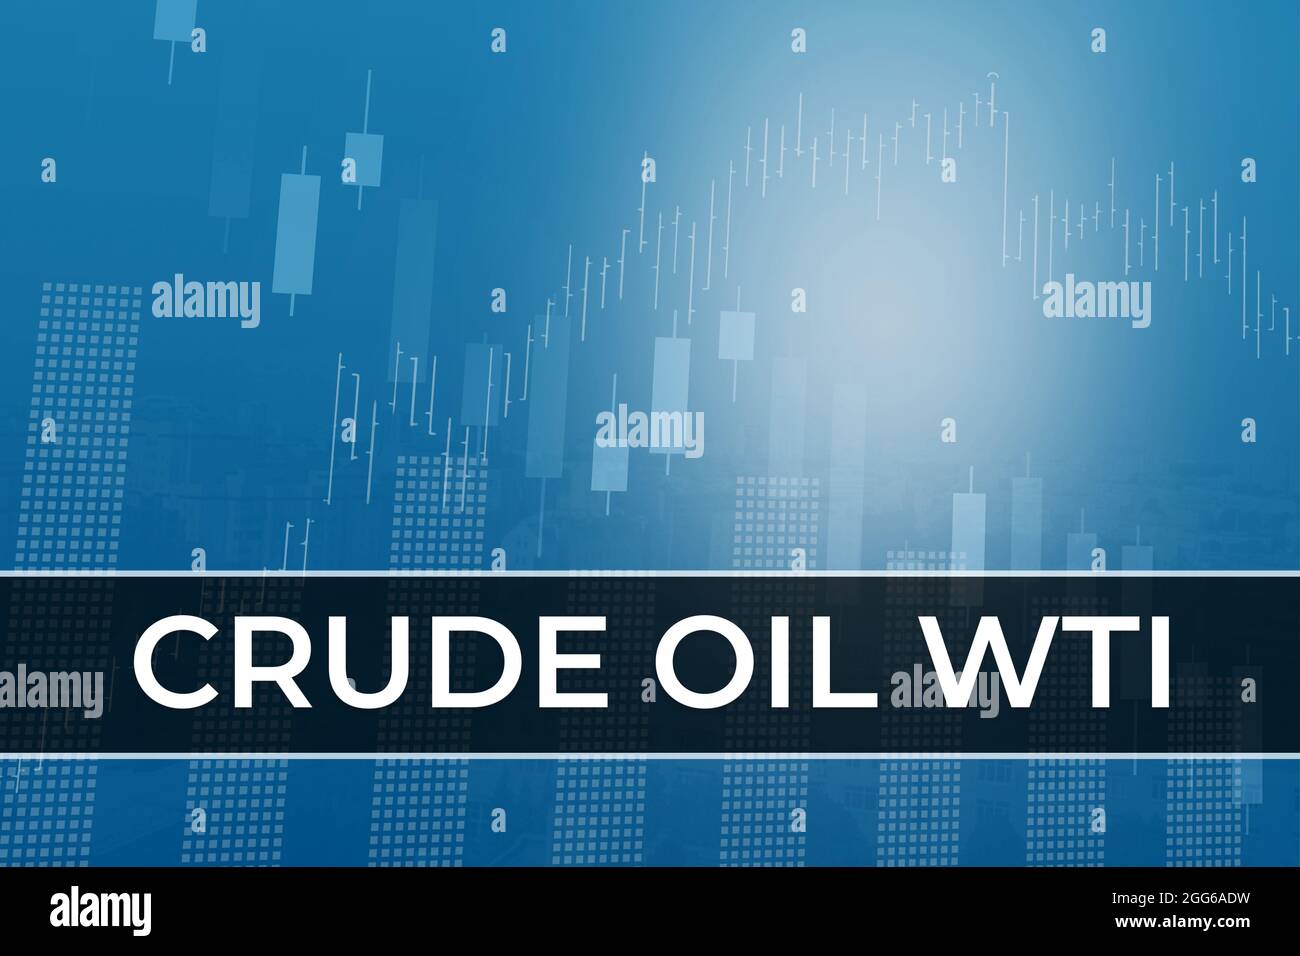 Évolution des prix du pétrole brut à terme WTI dans le monde sur fond financier bleu à partir de colonnes, graphiques, graphiques, piliers, bougies, barres. Tendance vers le haut et vers le bas, F Banque D'Images